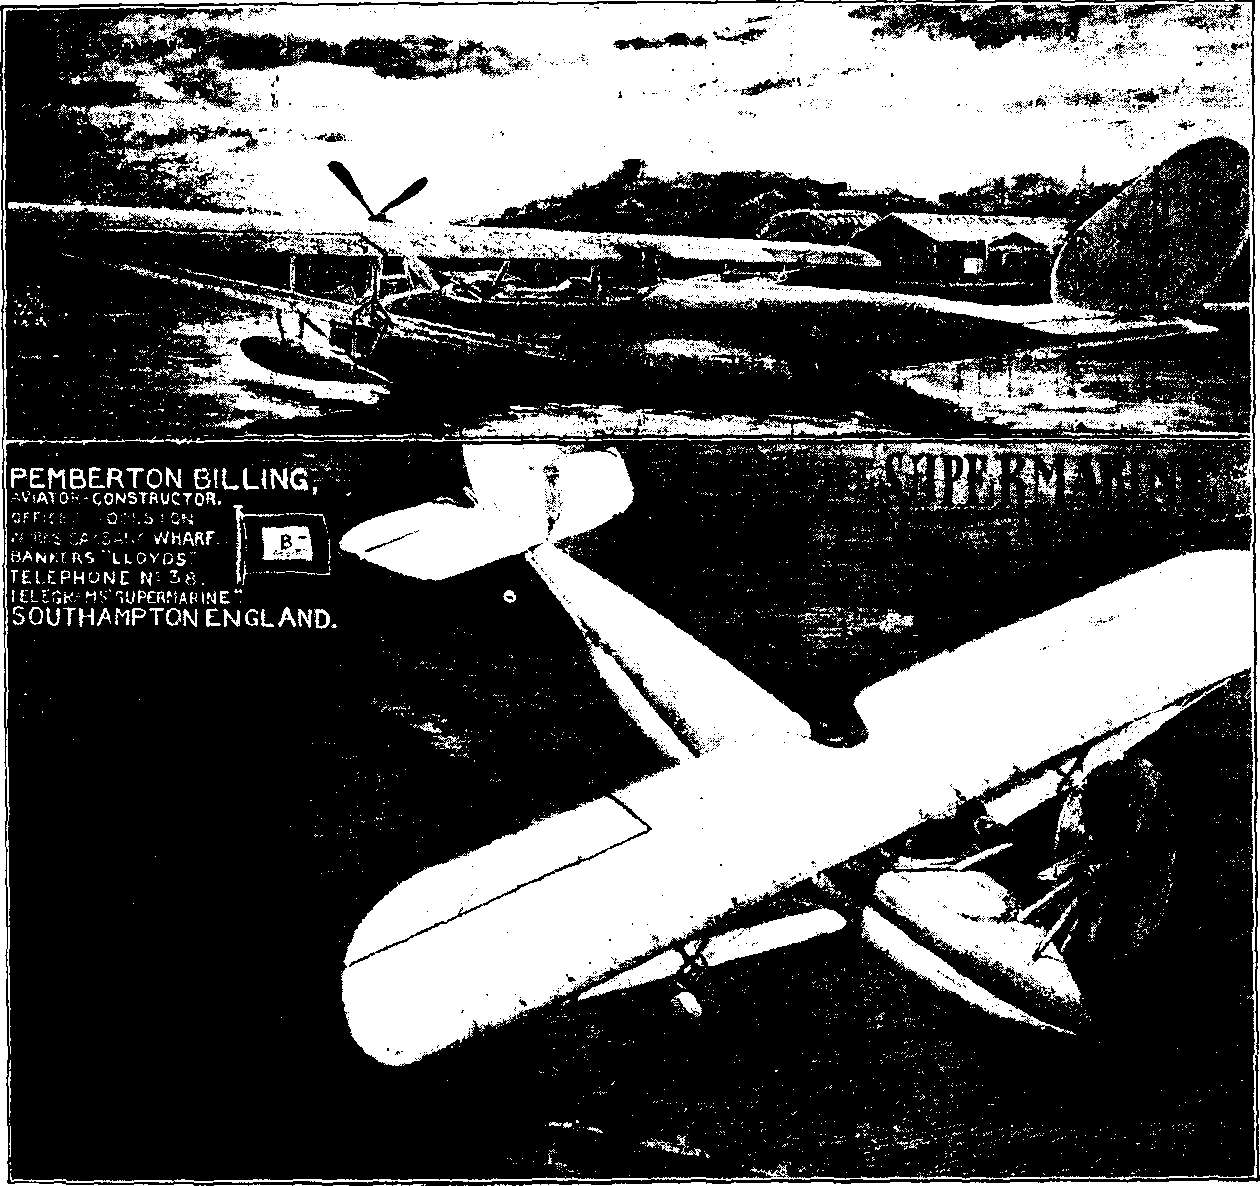 Reichswehr sowie Luftwaffe und Luftfahrt im Ersten Weltkrieg - Motorflug sowie Fliegerei und Flugzeuge im Jahre 1914